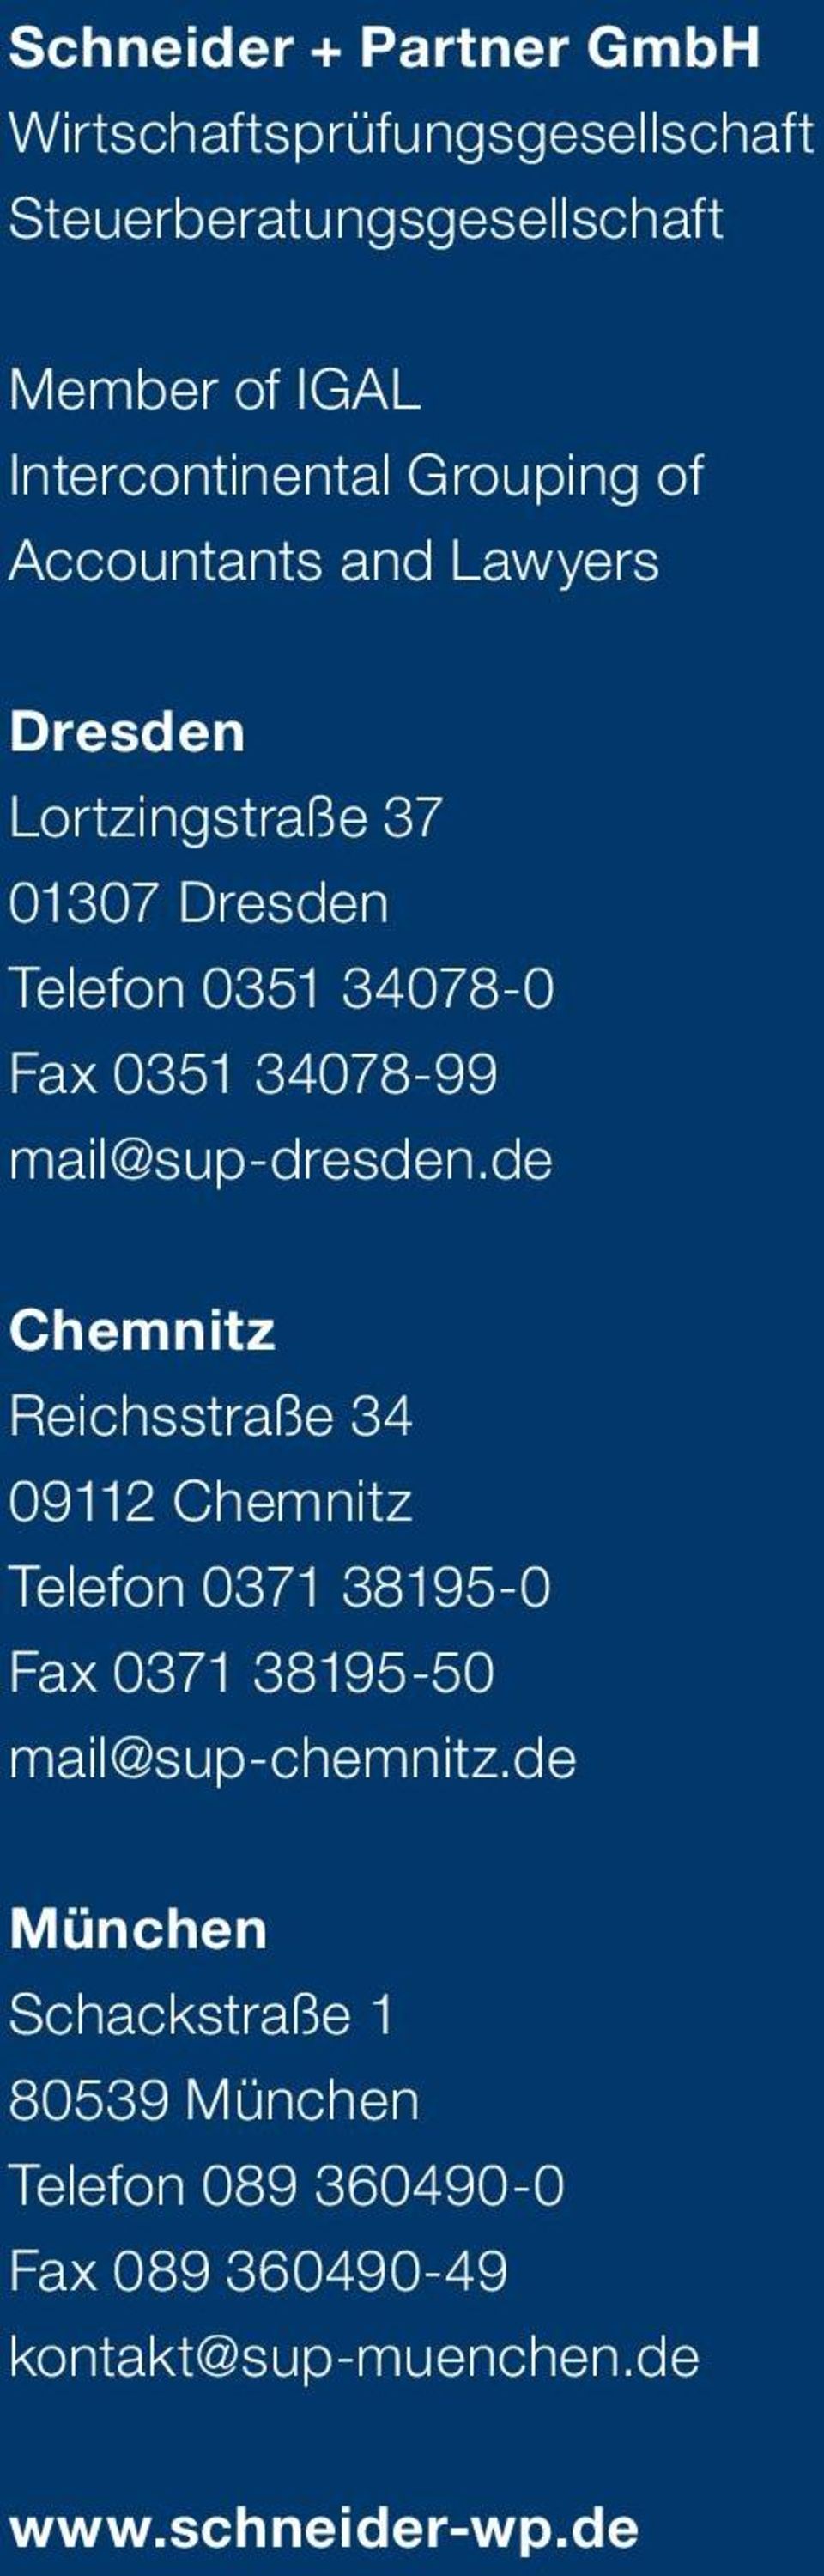 mail@sup-dresden.de Chemnitz Reichsstraße 34 09112 Chemnitz Telefon 0371 38195-0 Fax 0371 38195-50 mail@sup-chemnitz.